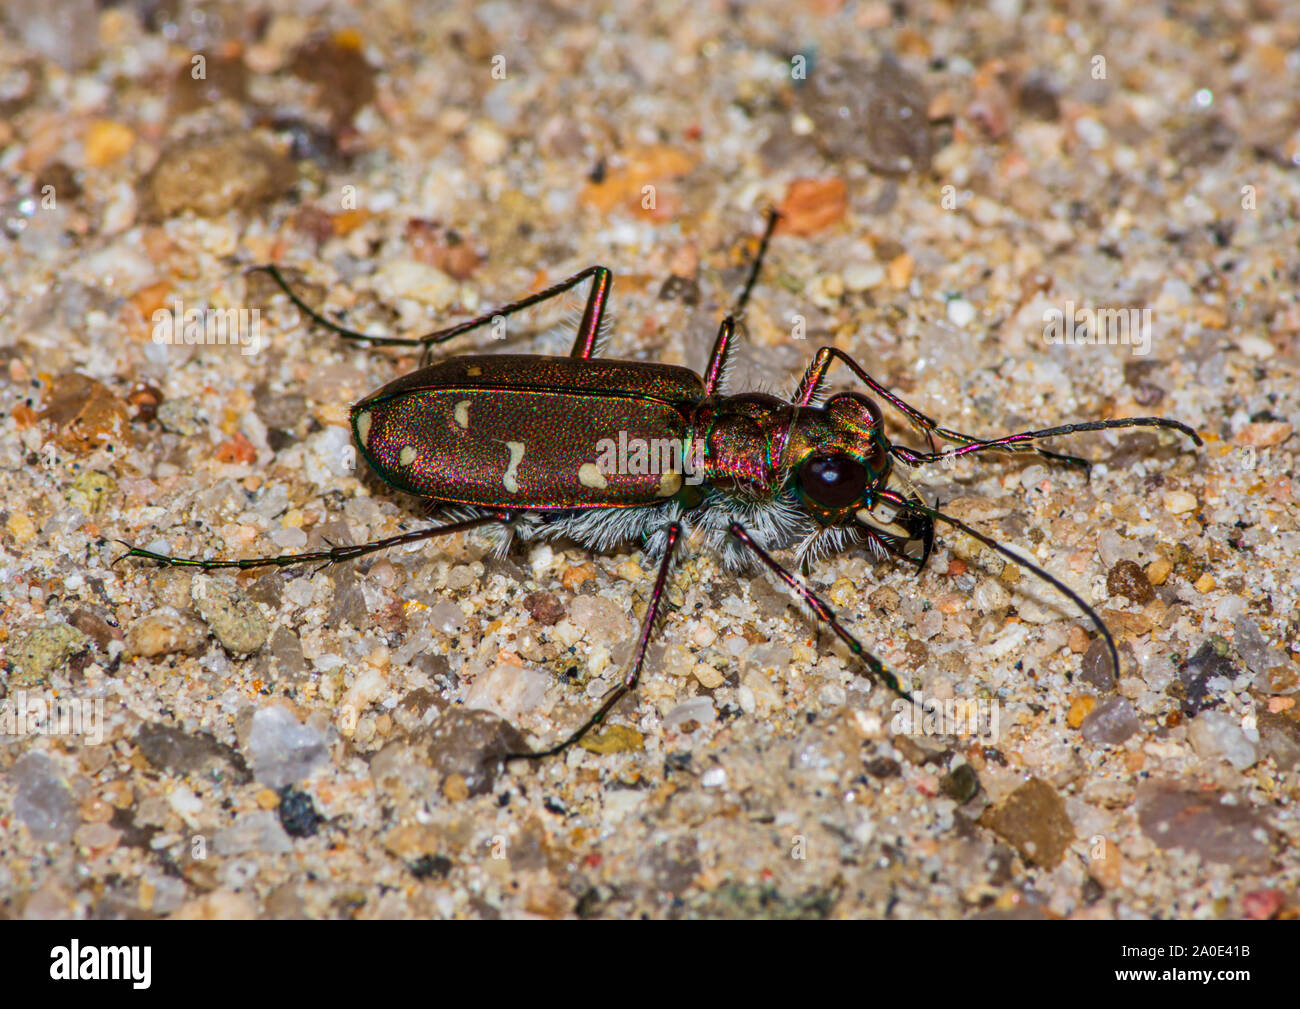 Douze points Tiger beetle (Cincindela duodecimguttata) de chasser une proie dans la région de Sandy Creek, près de Castle Rock Colorado nous. Photo prise en septembre. Banque D'Images